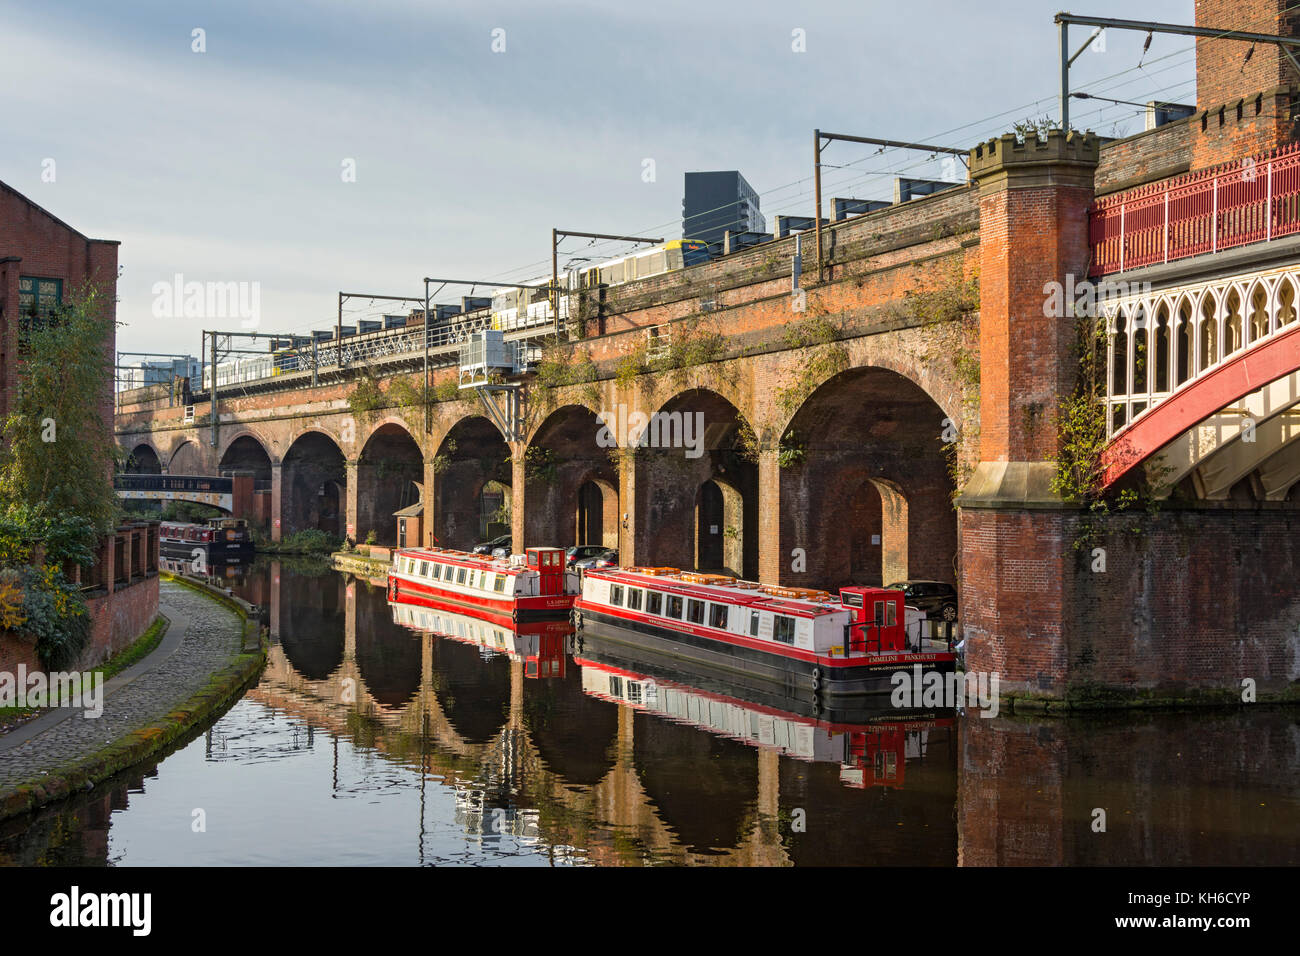 Viaduc Ferroviaire victorien et canal des bateaux sur le Canal de Bridgewater au bassin de Castlefield, Manchester, Angleterre, Royaume-Uni. Banque D'Images